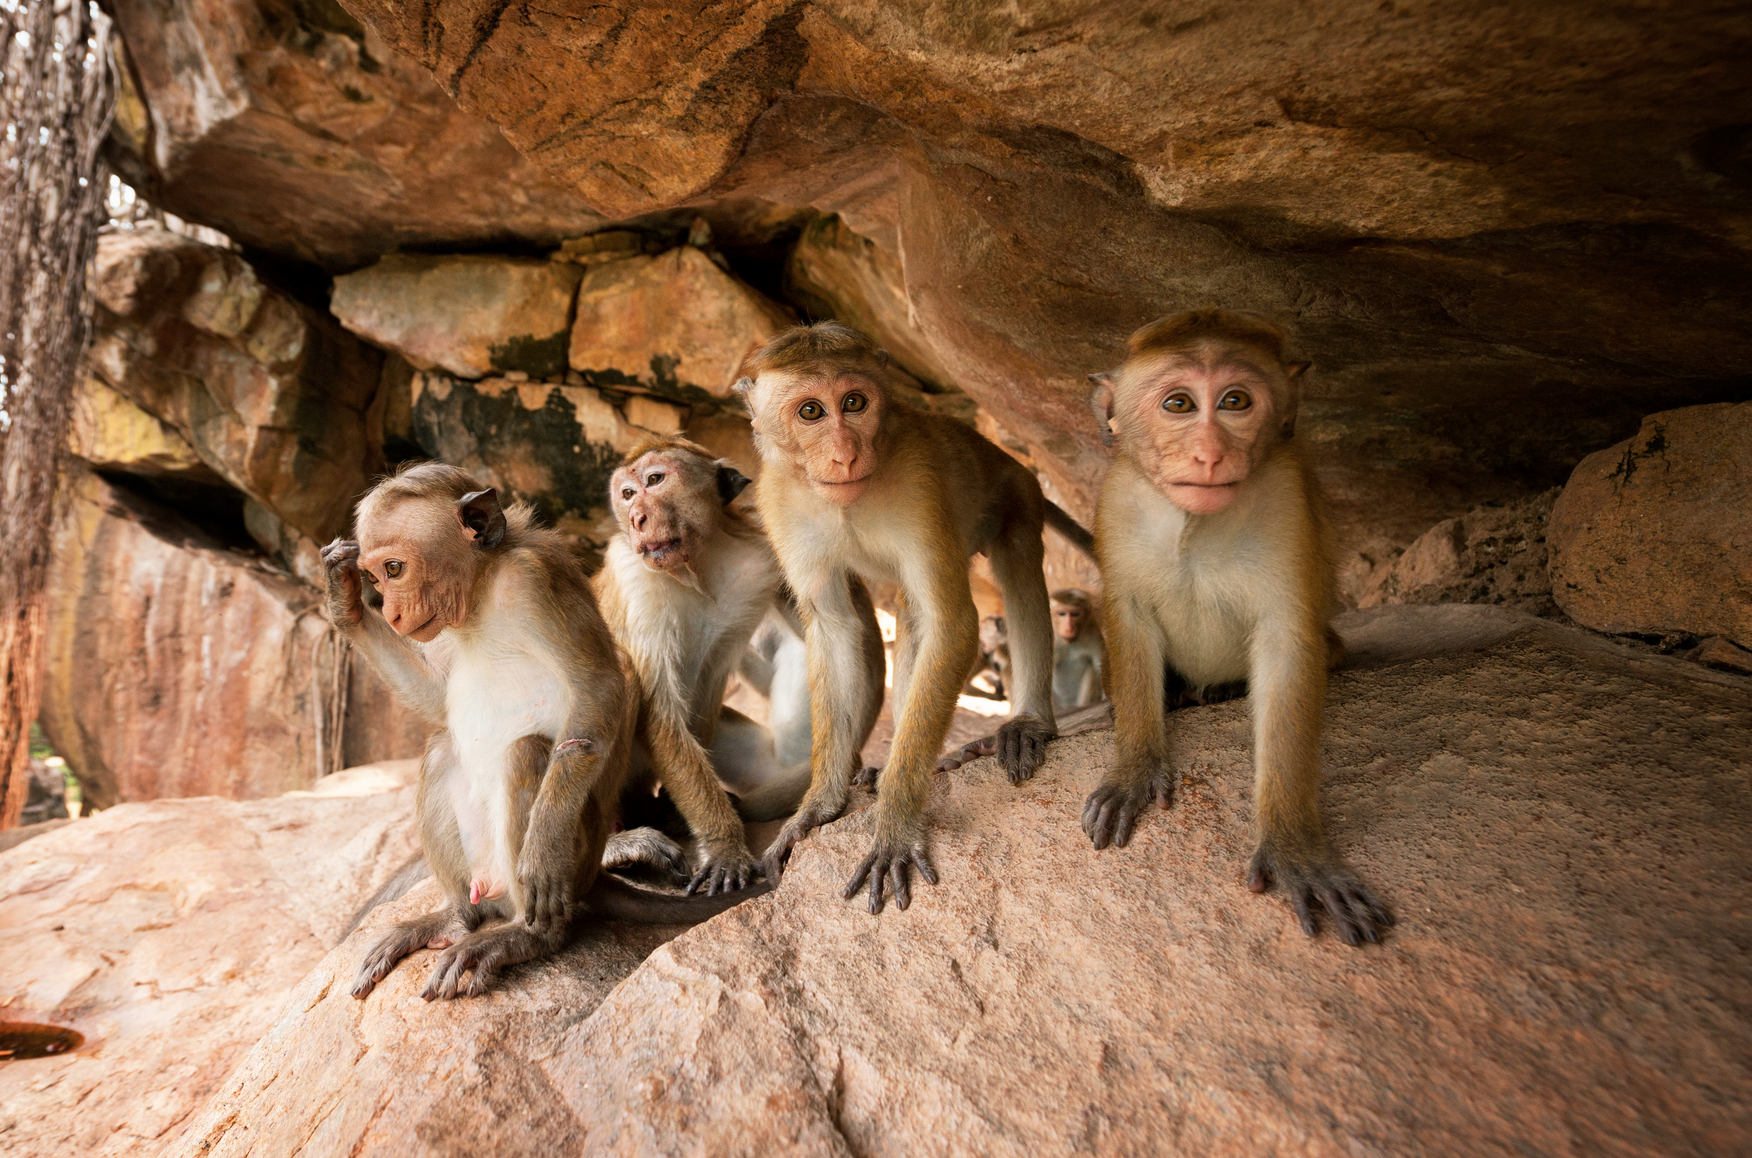 Monkey-Kingdom-baby-monkey-survival-shelter